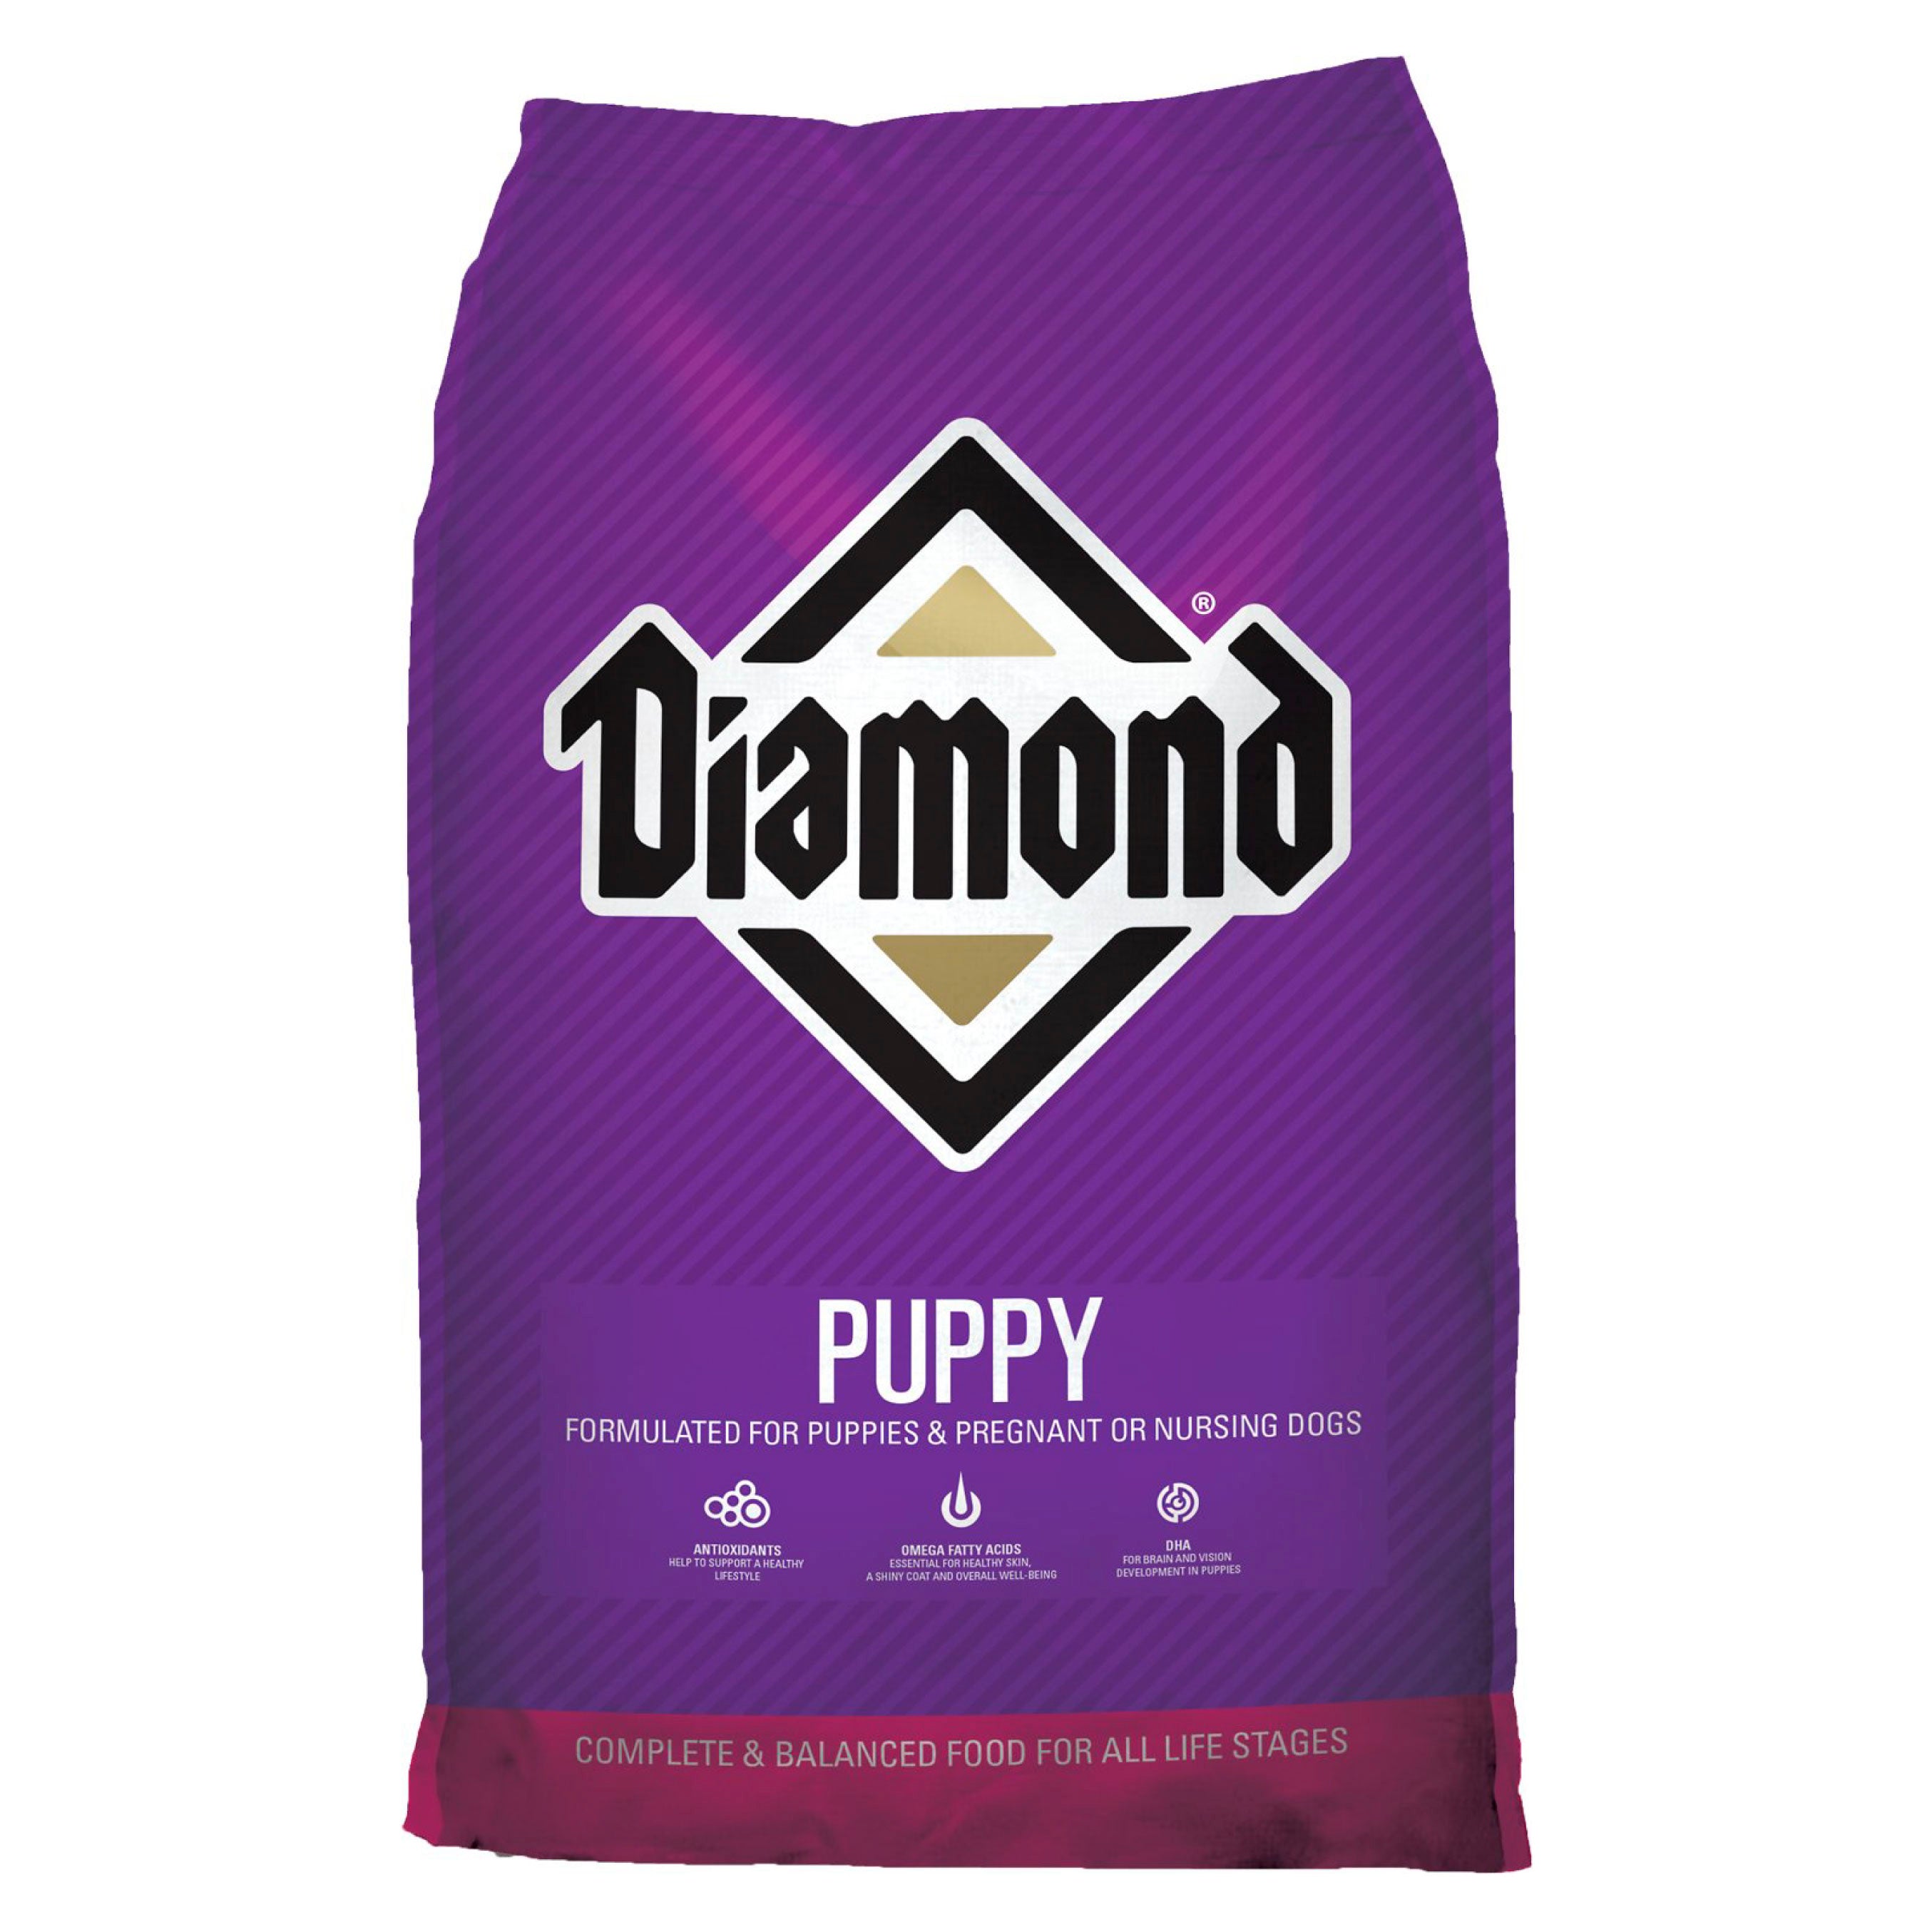 Diamond Puppy - Croquetas Premium para Cachorro, perro, Diamond, Mister Mascotas